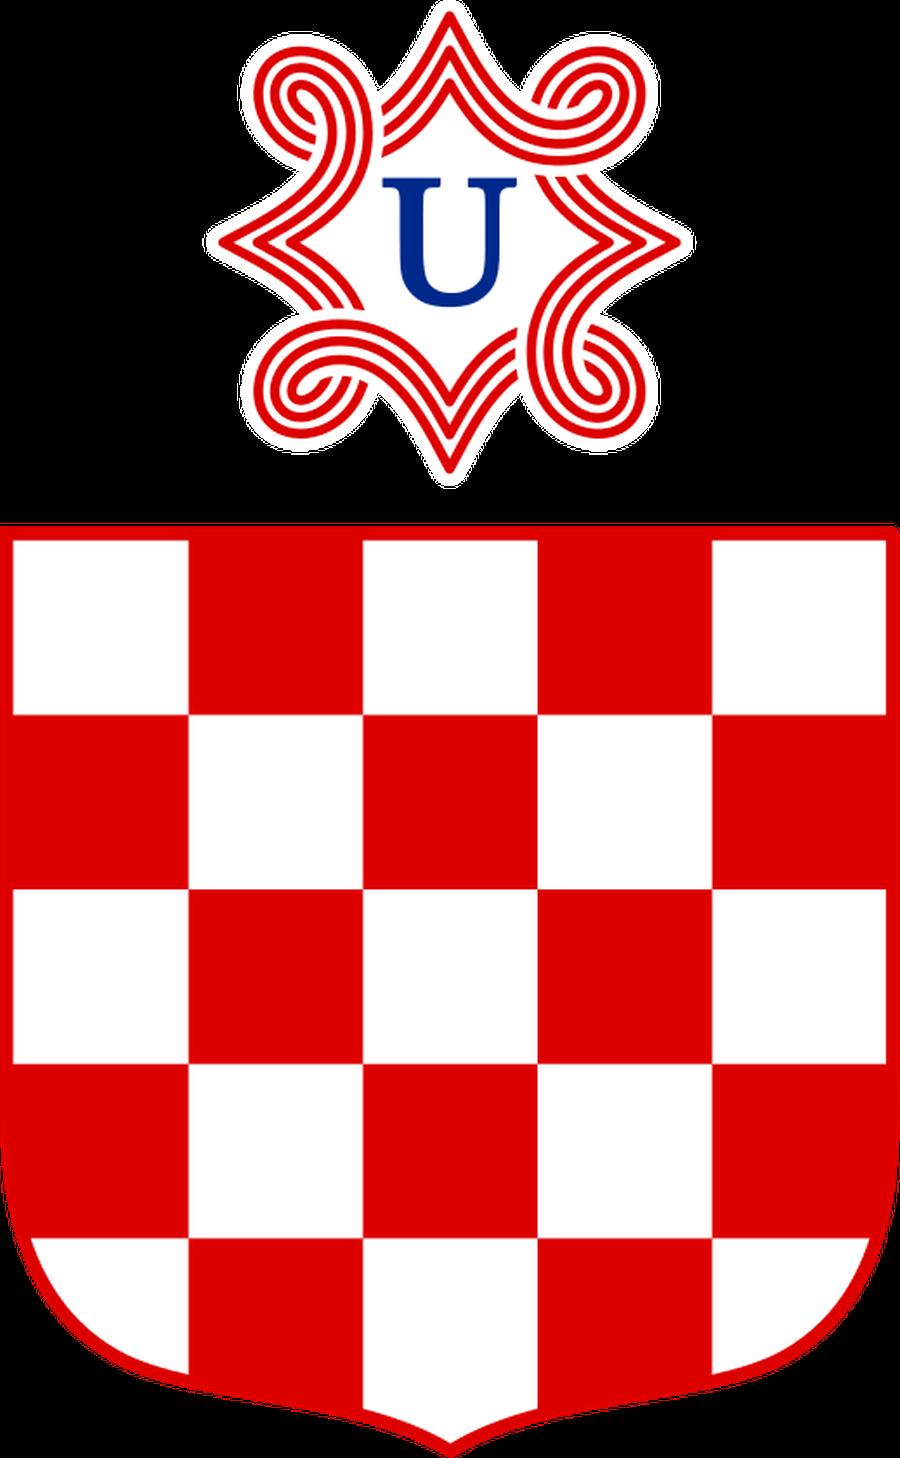 хорватия флаг и герб